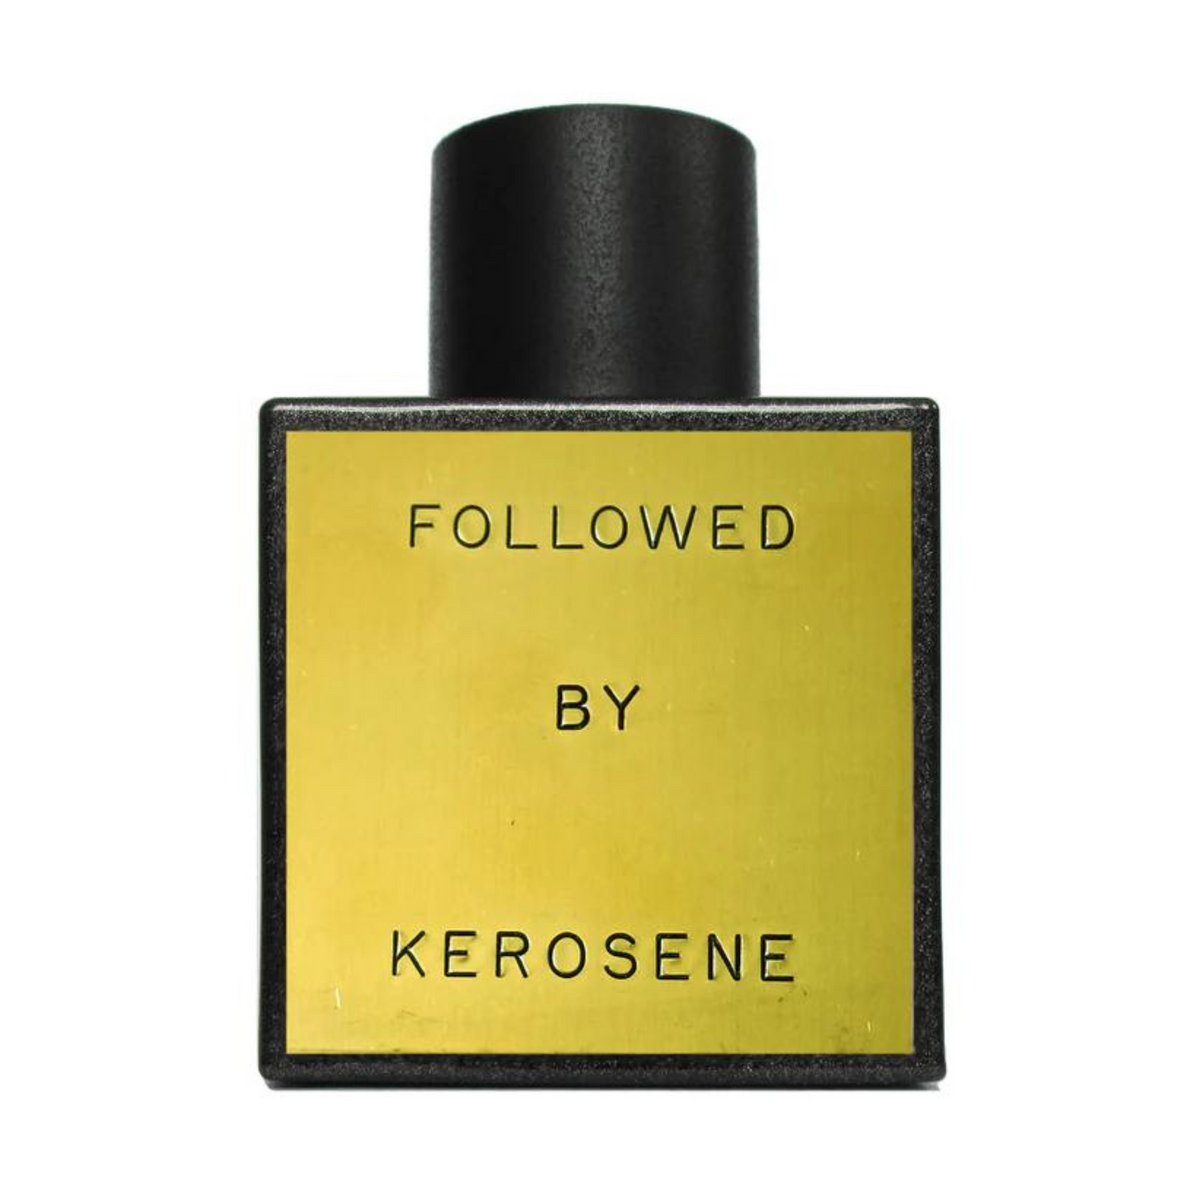 Primary Image of Kerosene Followed Eau De Parfum (100 ml) 